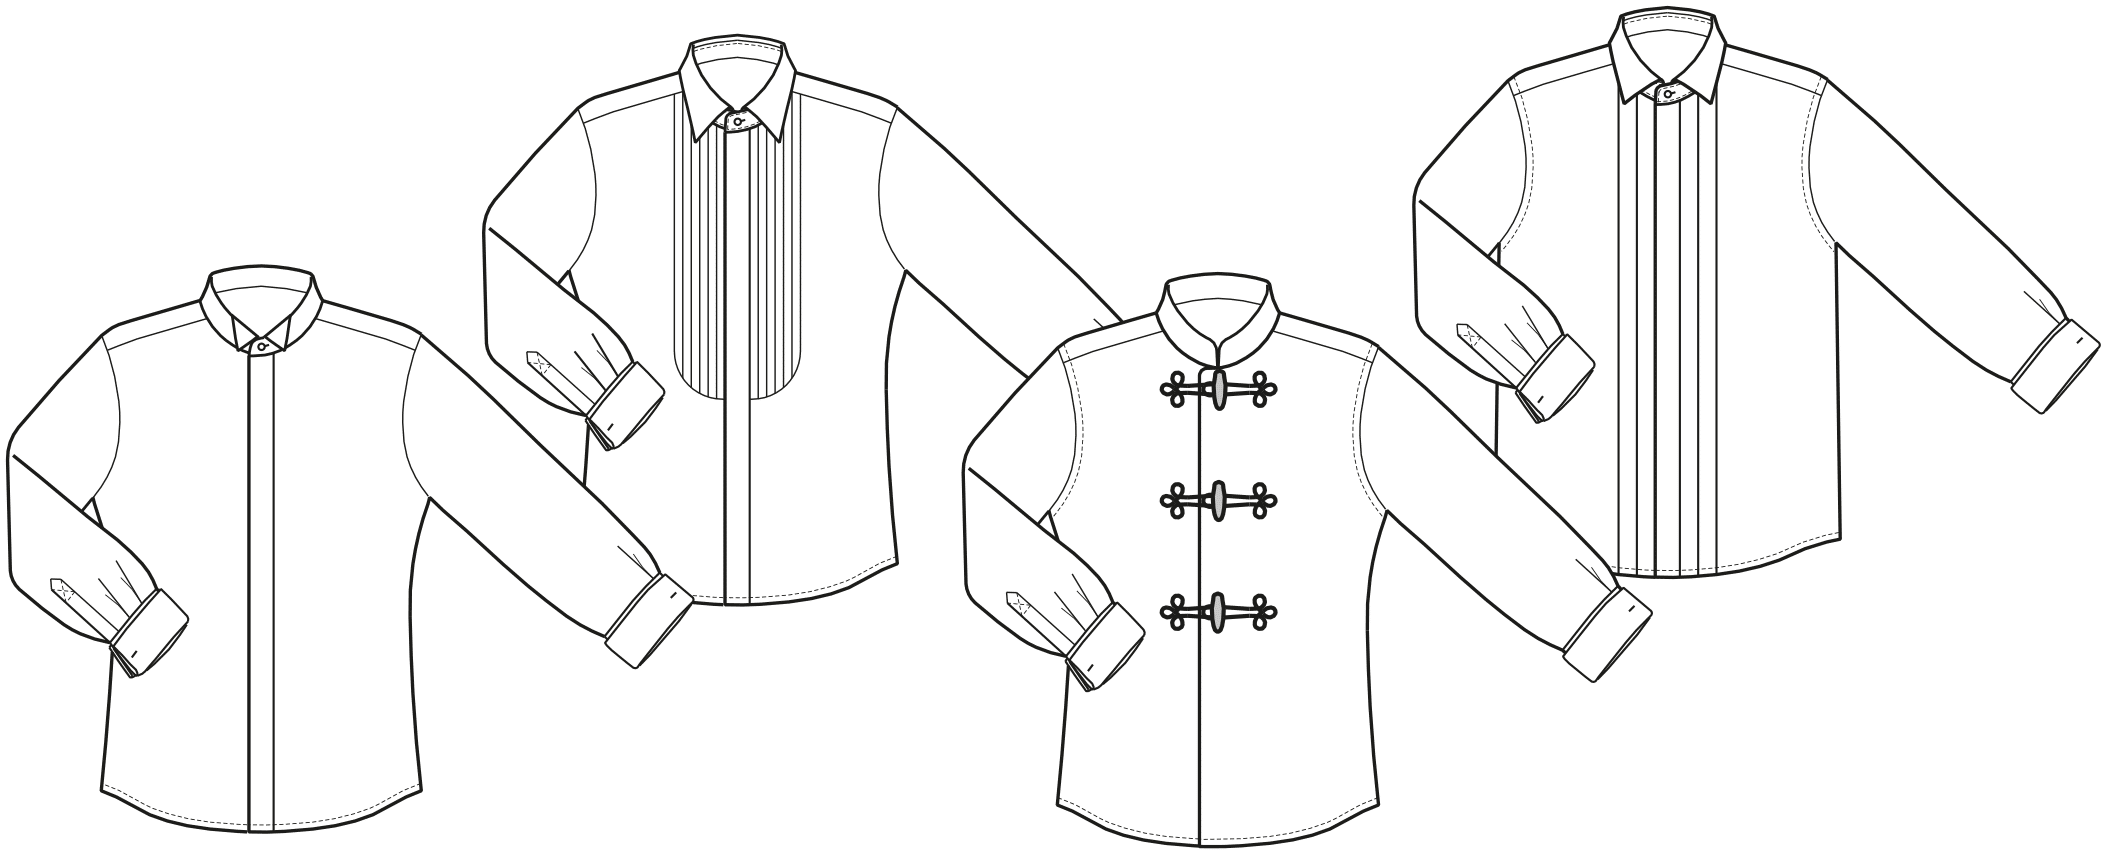 Technische Zeichnungen von Hemden in Bauchgröße für Dirigenten ist abgebildet.